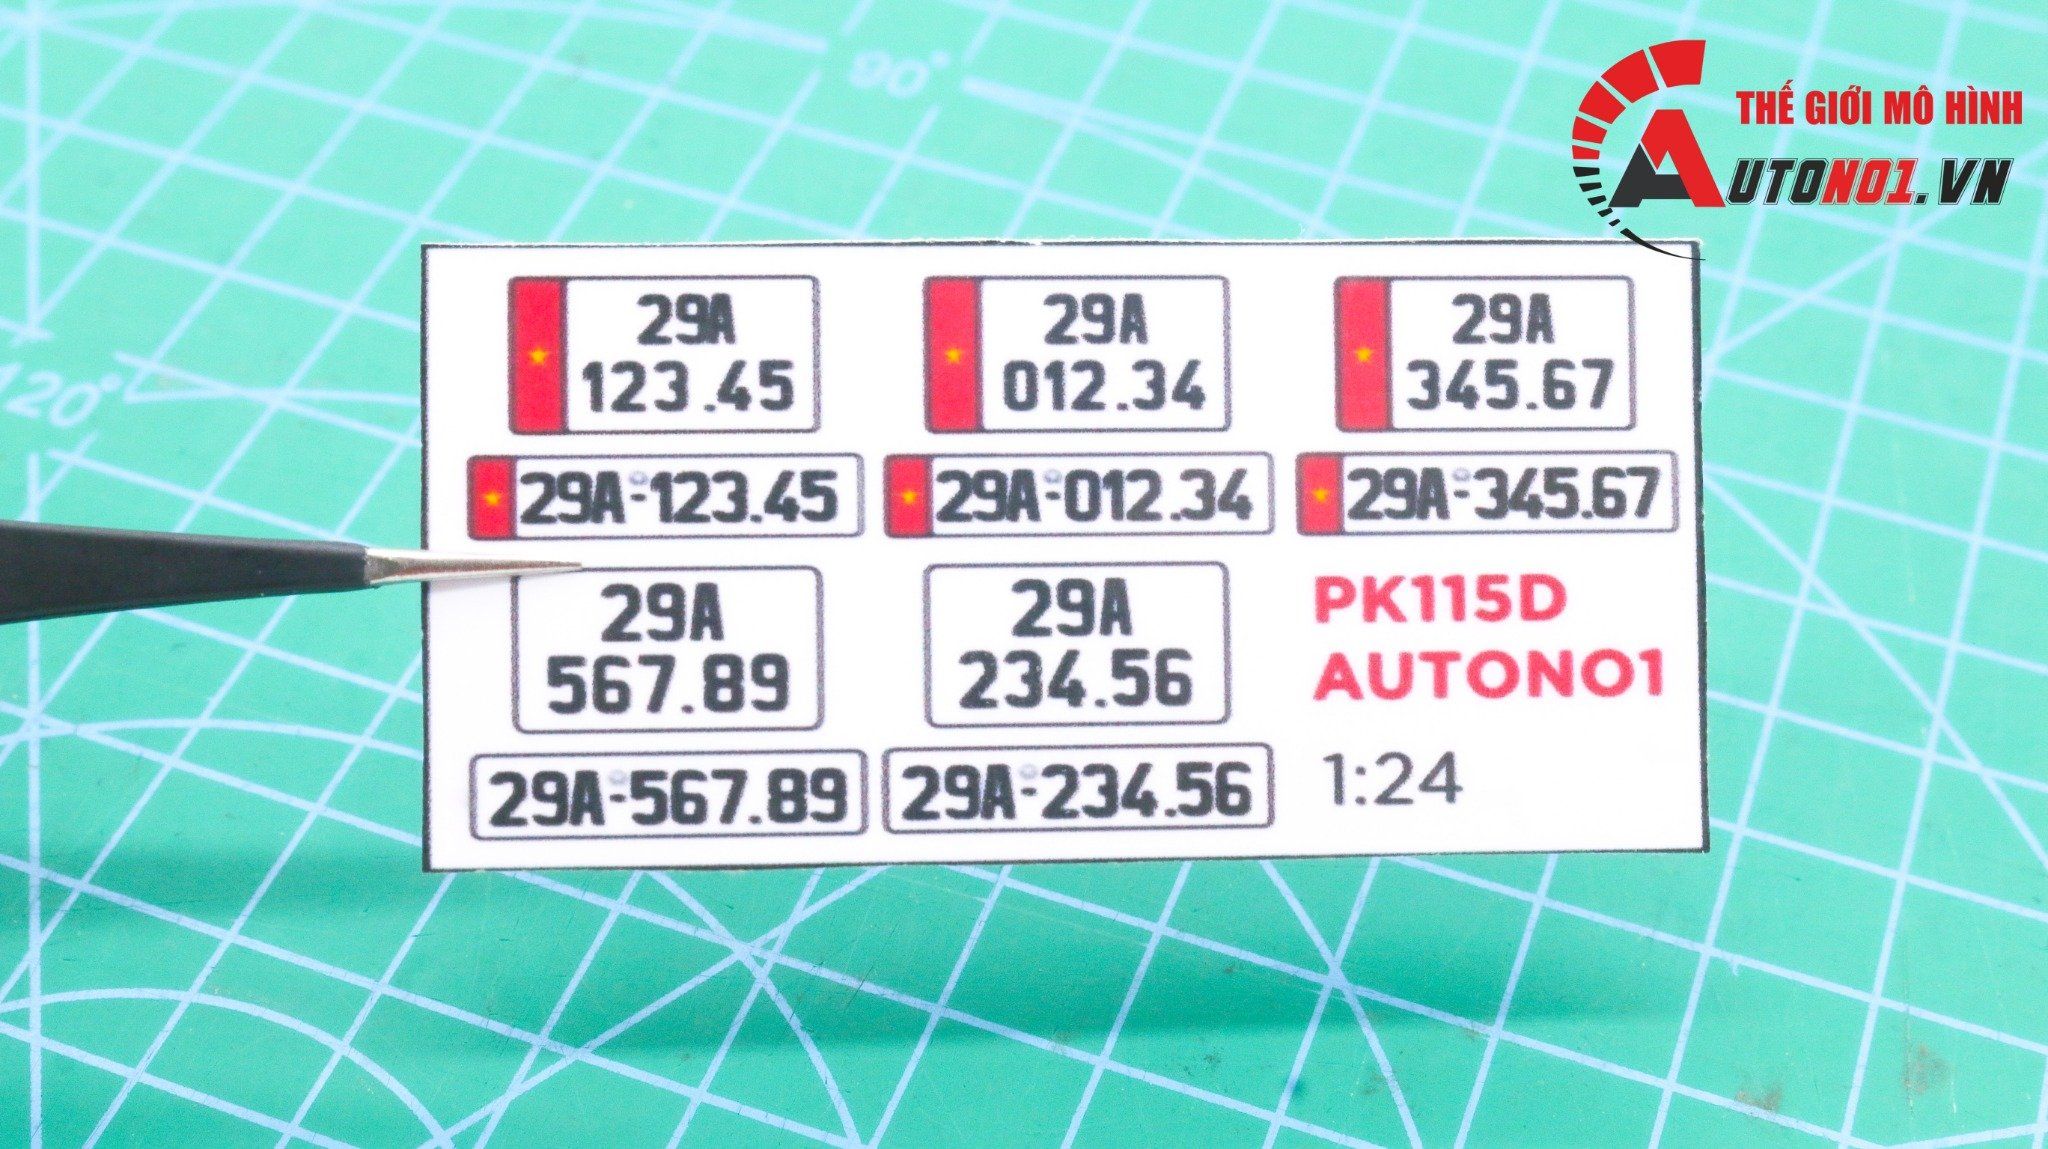  Phụ kiện 5 biển số xe mô hình tỉ lệ 1:24 ép plastic Autono1 Hà Nội PK115 